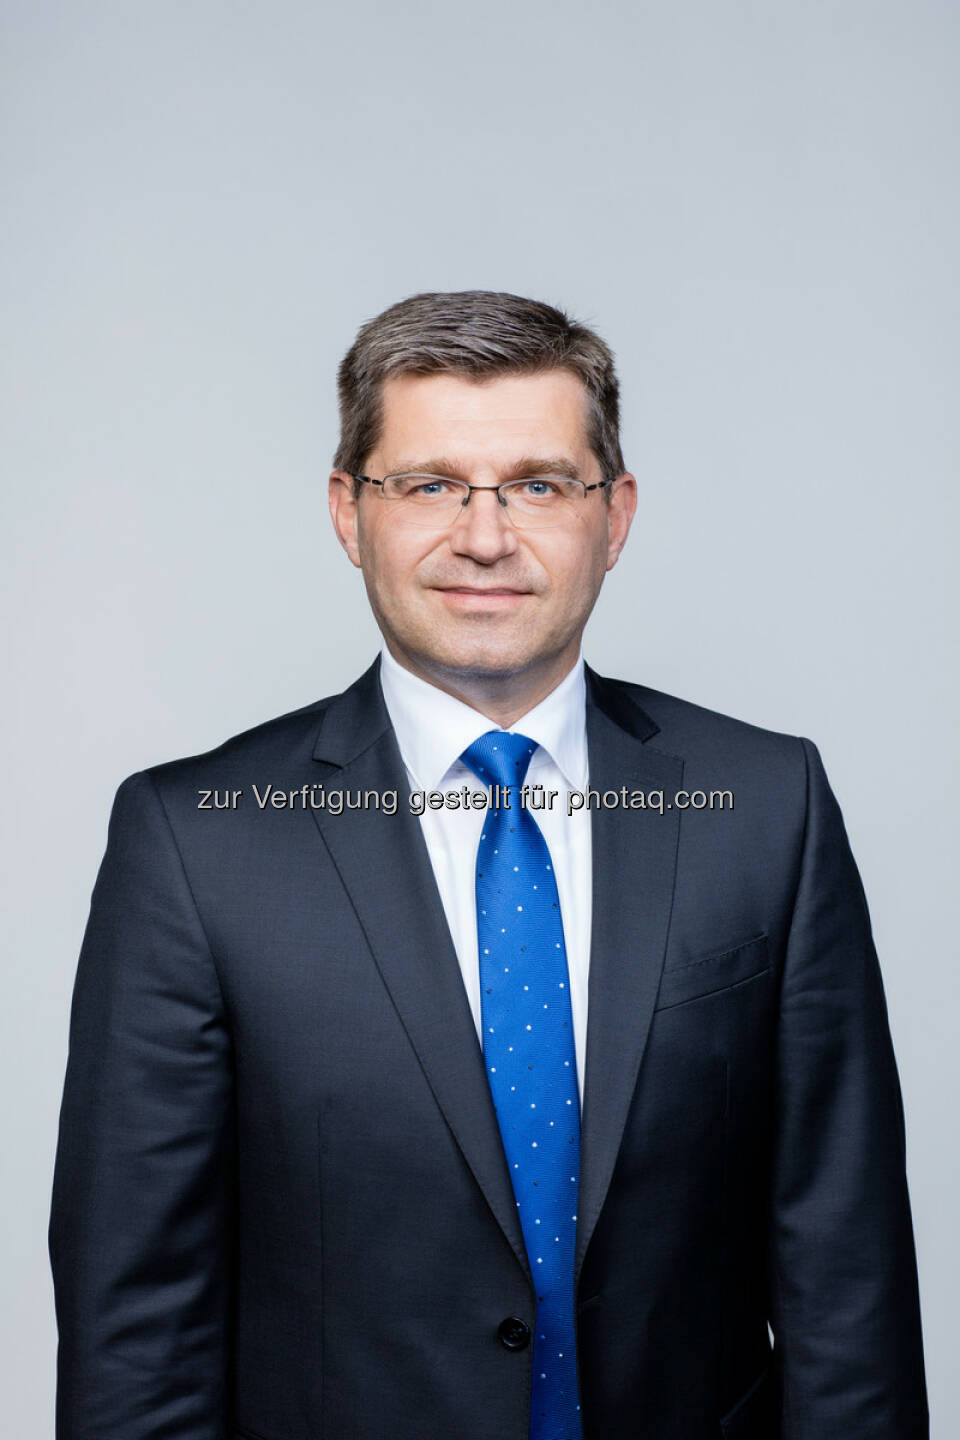 Robert Schweizer ist seit 1. Februar 2016 neuer Landesdirektor der s Versicherung in Wien : Fotocredit: Sparkassen Versicherung AG Vienna Insurance Group